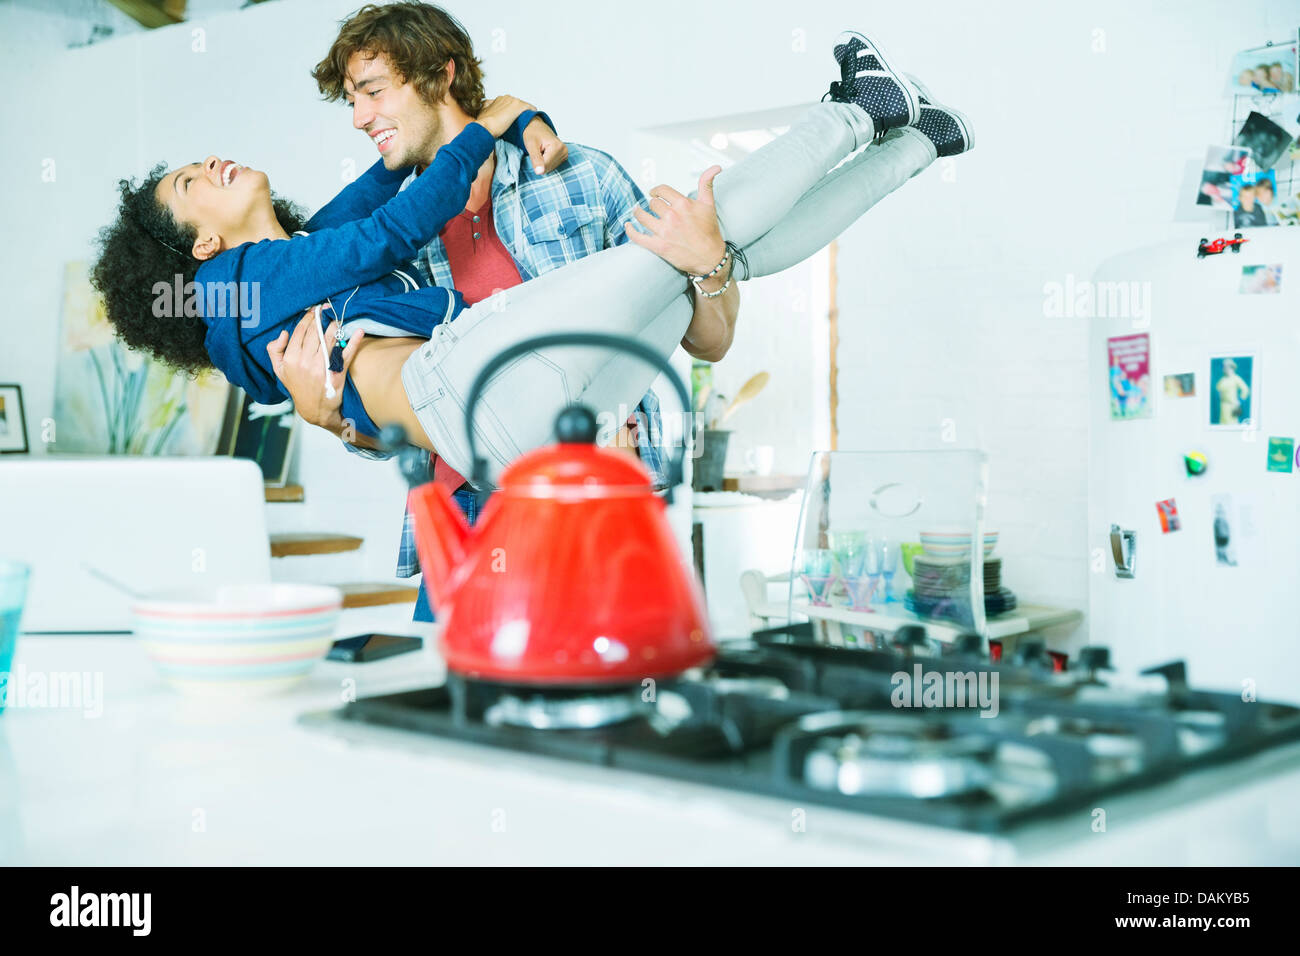 Paar spielen zusammen in der Küche Stockfoto